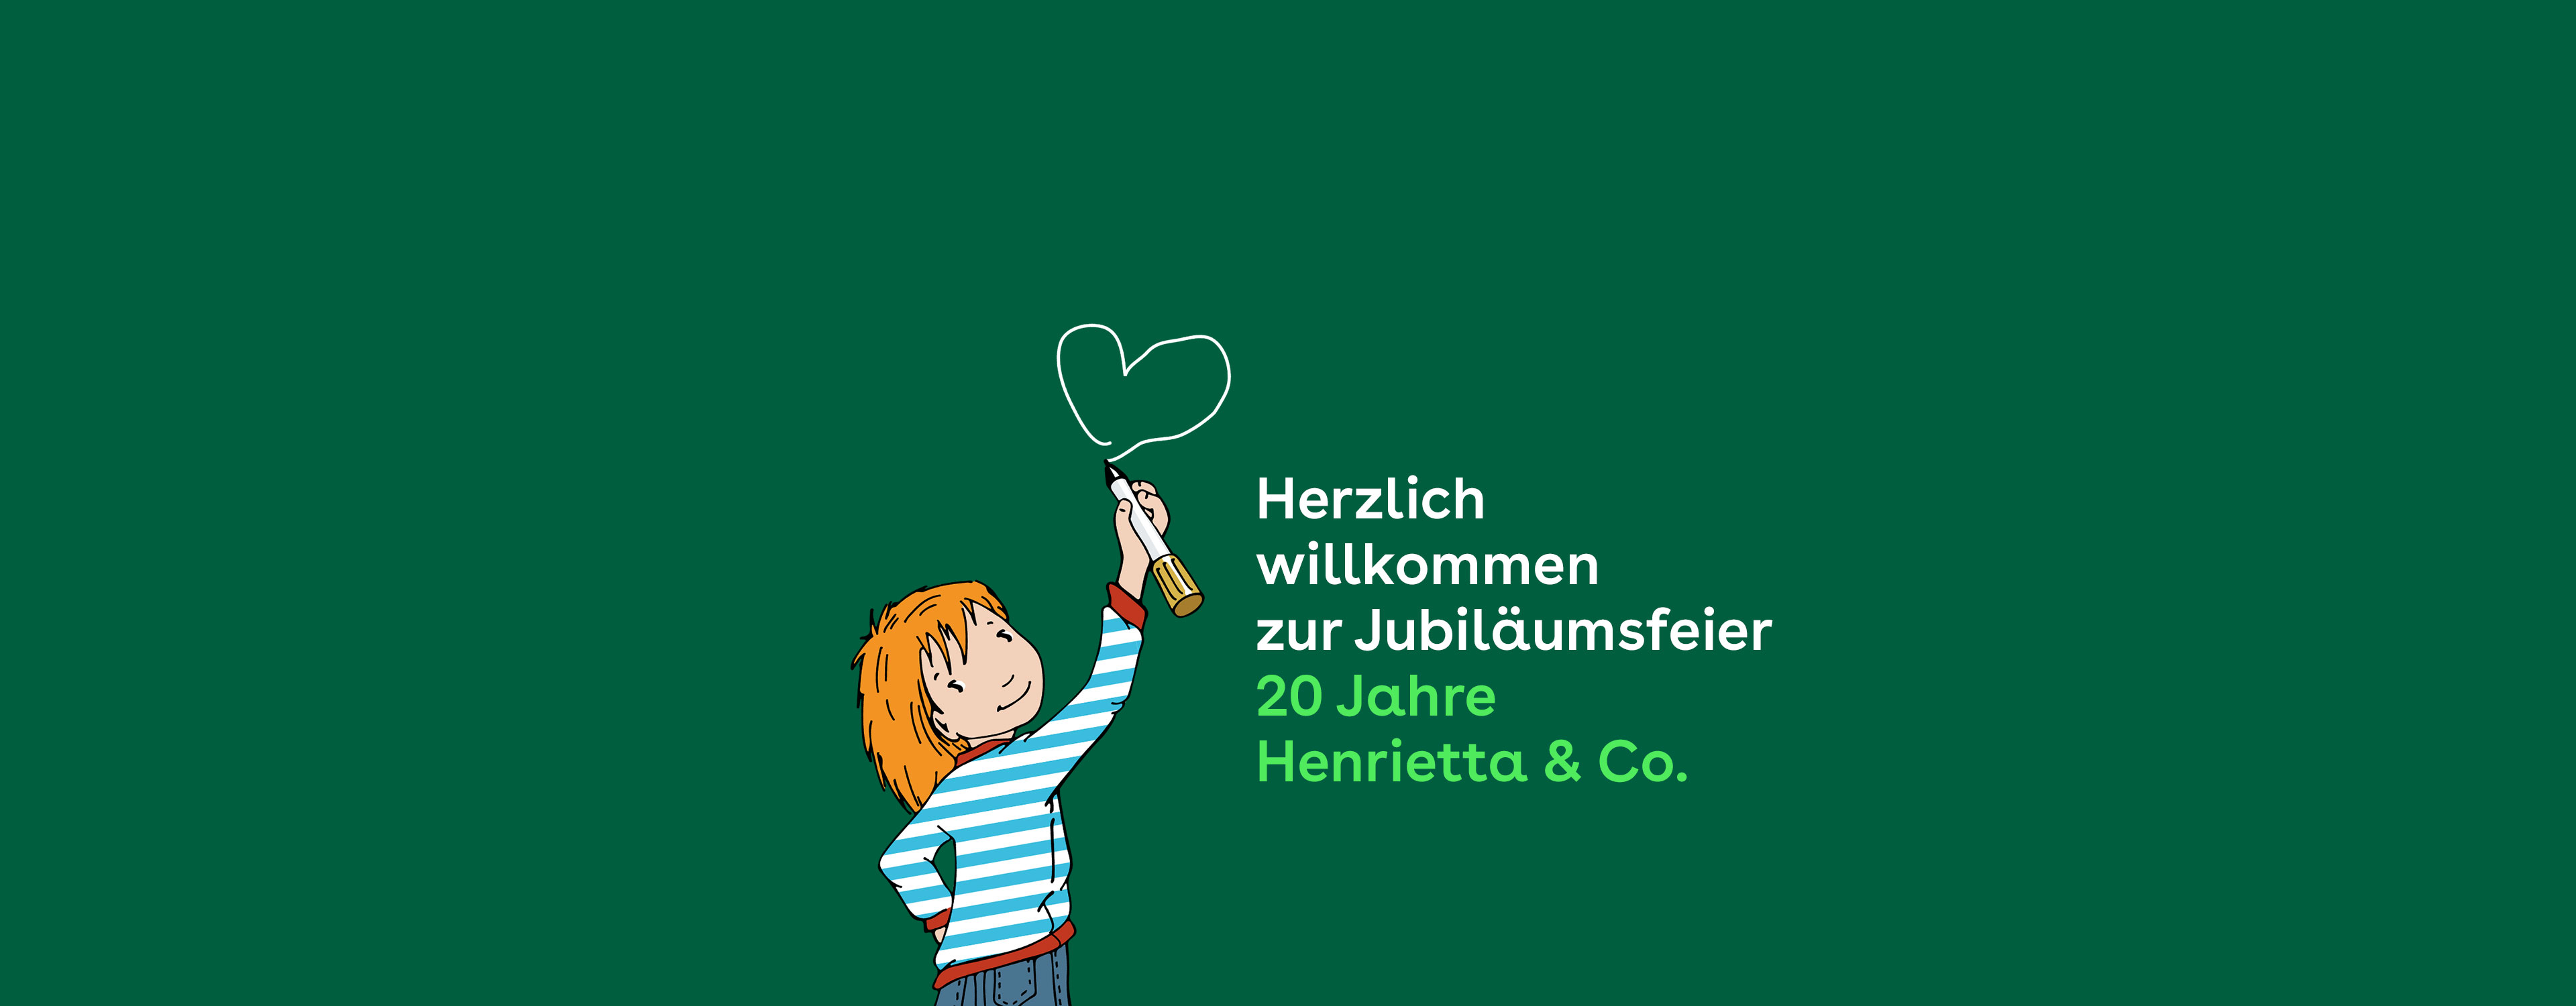 20 Jahre Henrietta & Co.